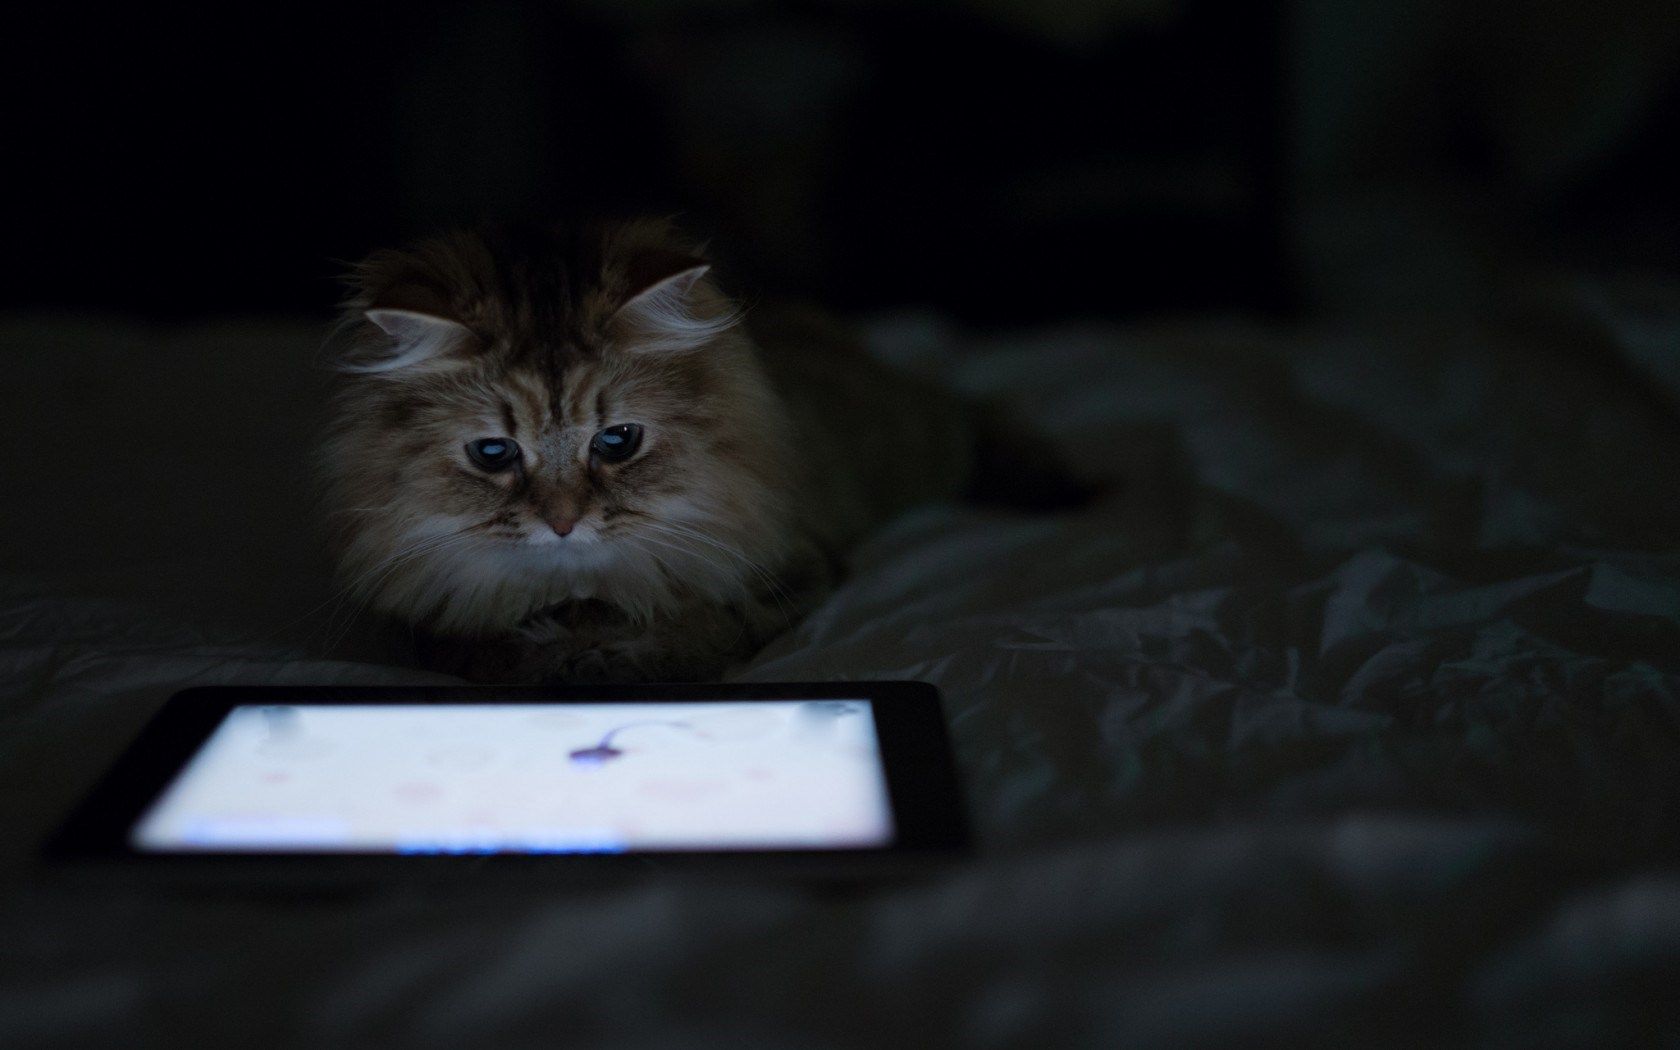 HD wallpaper, Cat, Bed, Tablet